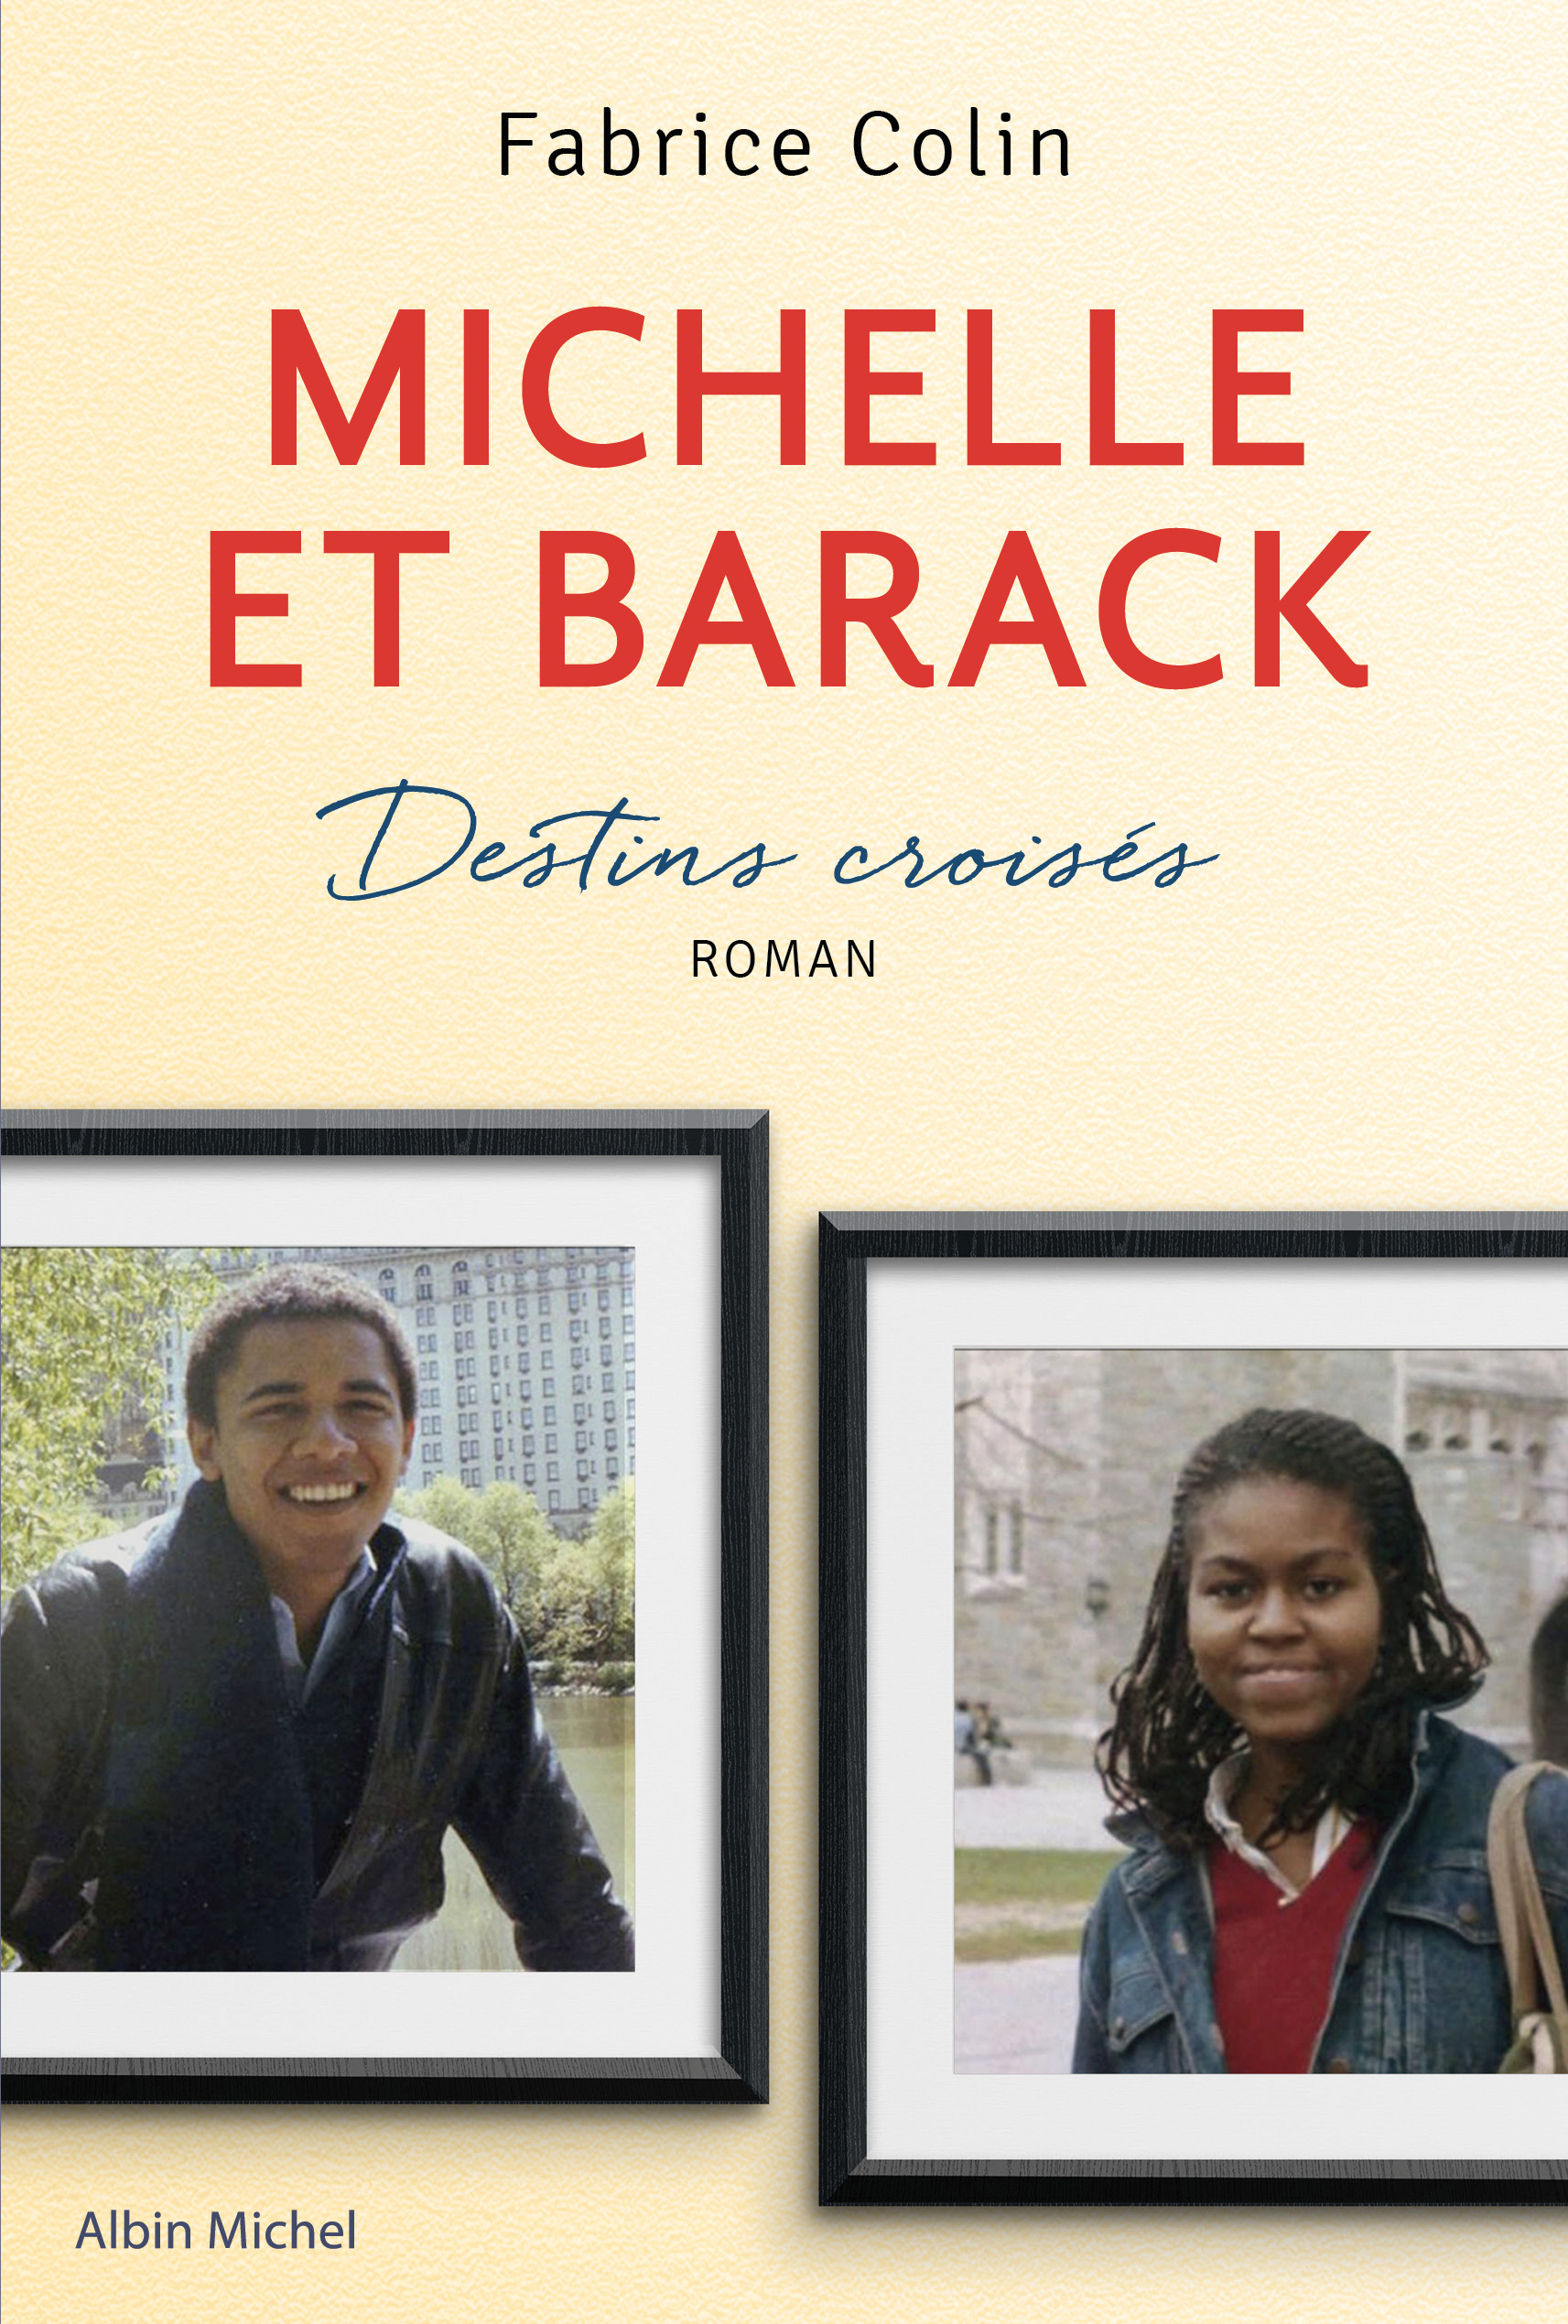 Couverture du livre Michelle et Barack